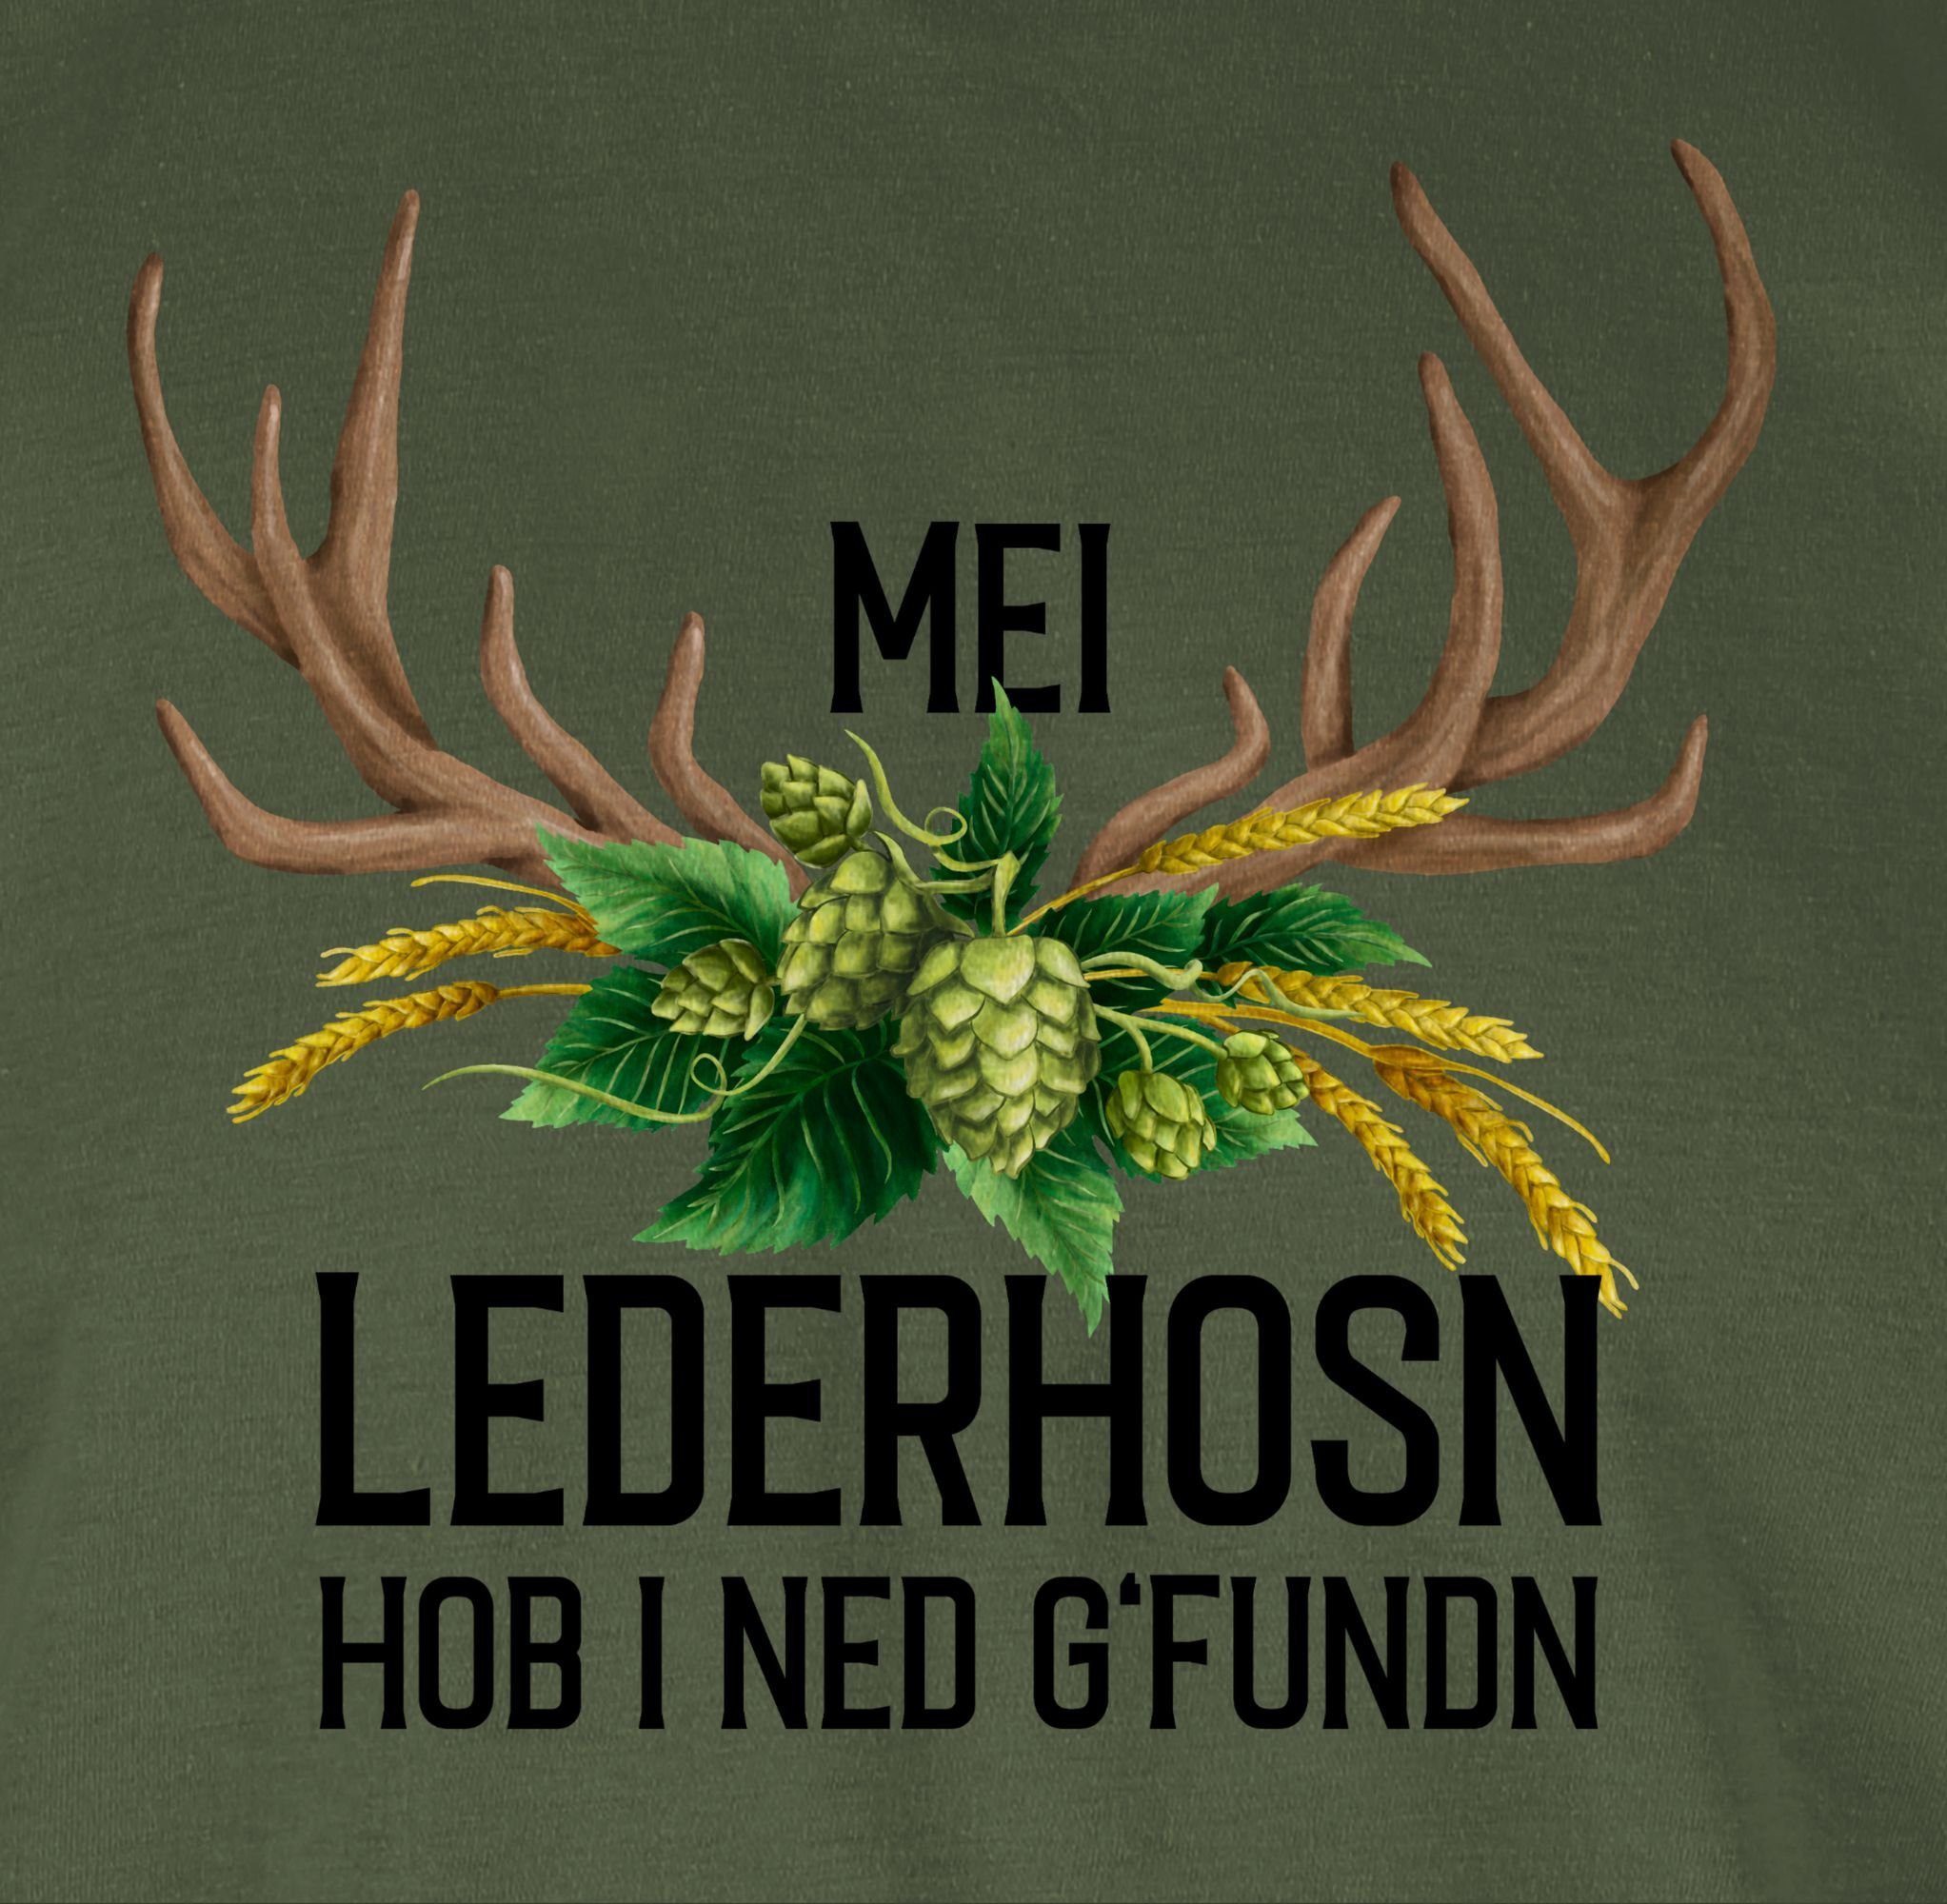 Herren Mode 01 Grün hob T-Shirt Lederhosn i Hirschgeweih - und für Oktoberfest Mei Army g'fundn ned Weizen Hopfen Shirtracer